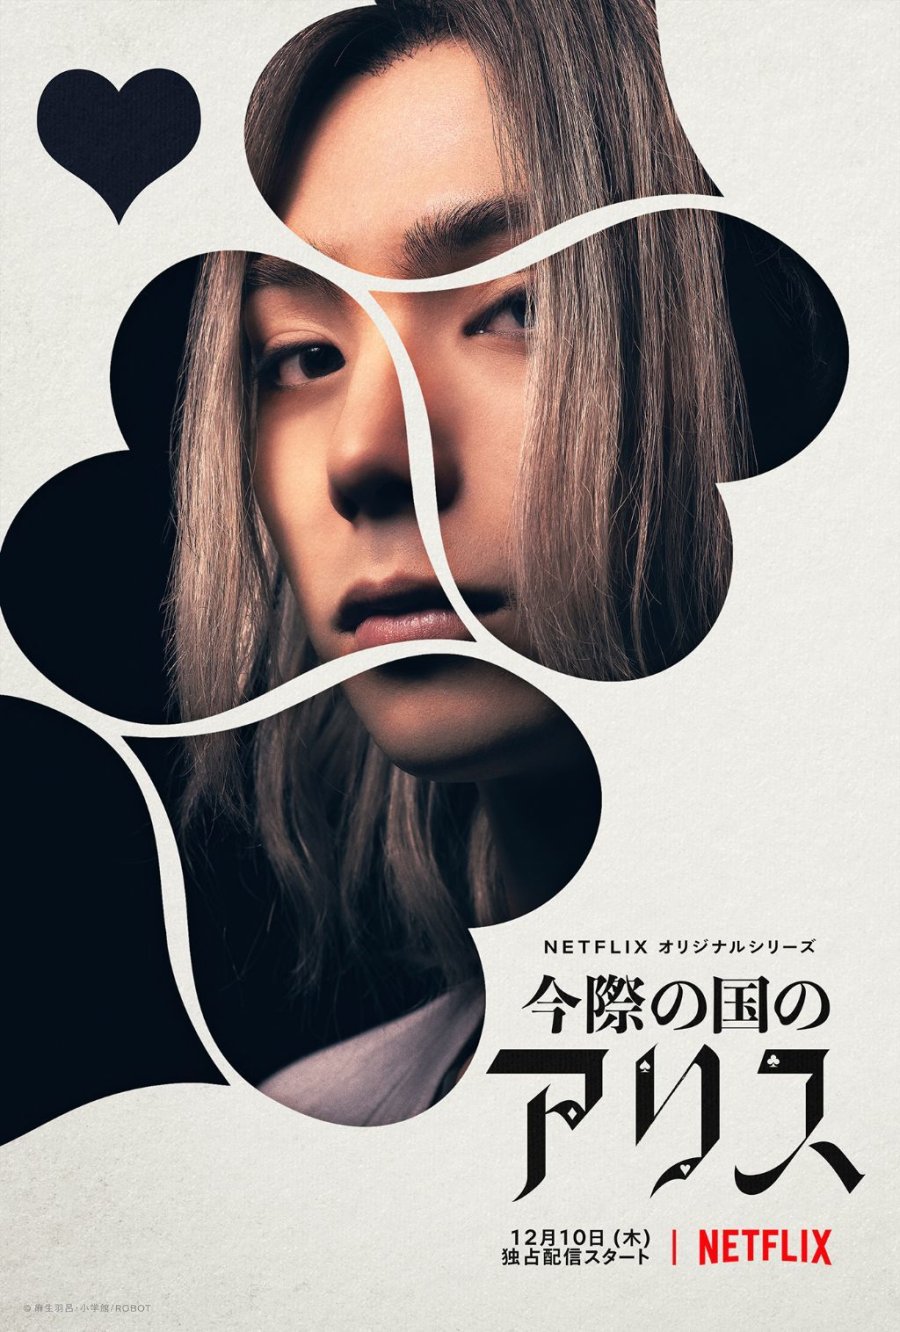 Cinema Secreto: Cinegnose: Série 'Alice in Borderland': o gnosticismo pop  japonês dos mangás ao vídeo